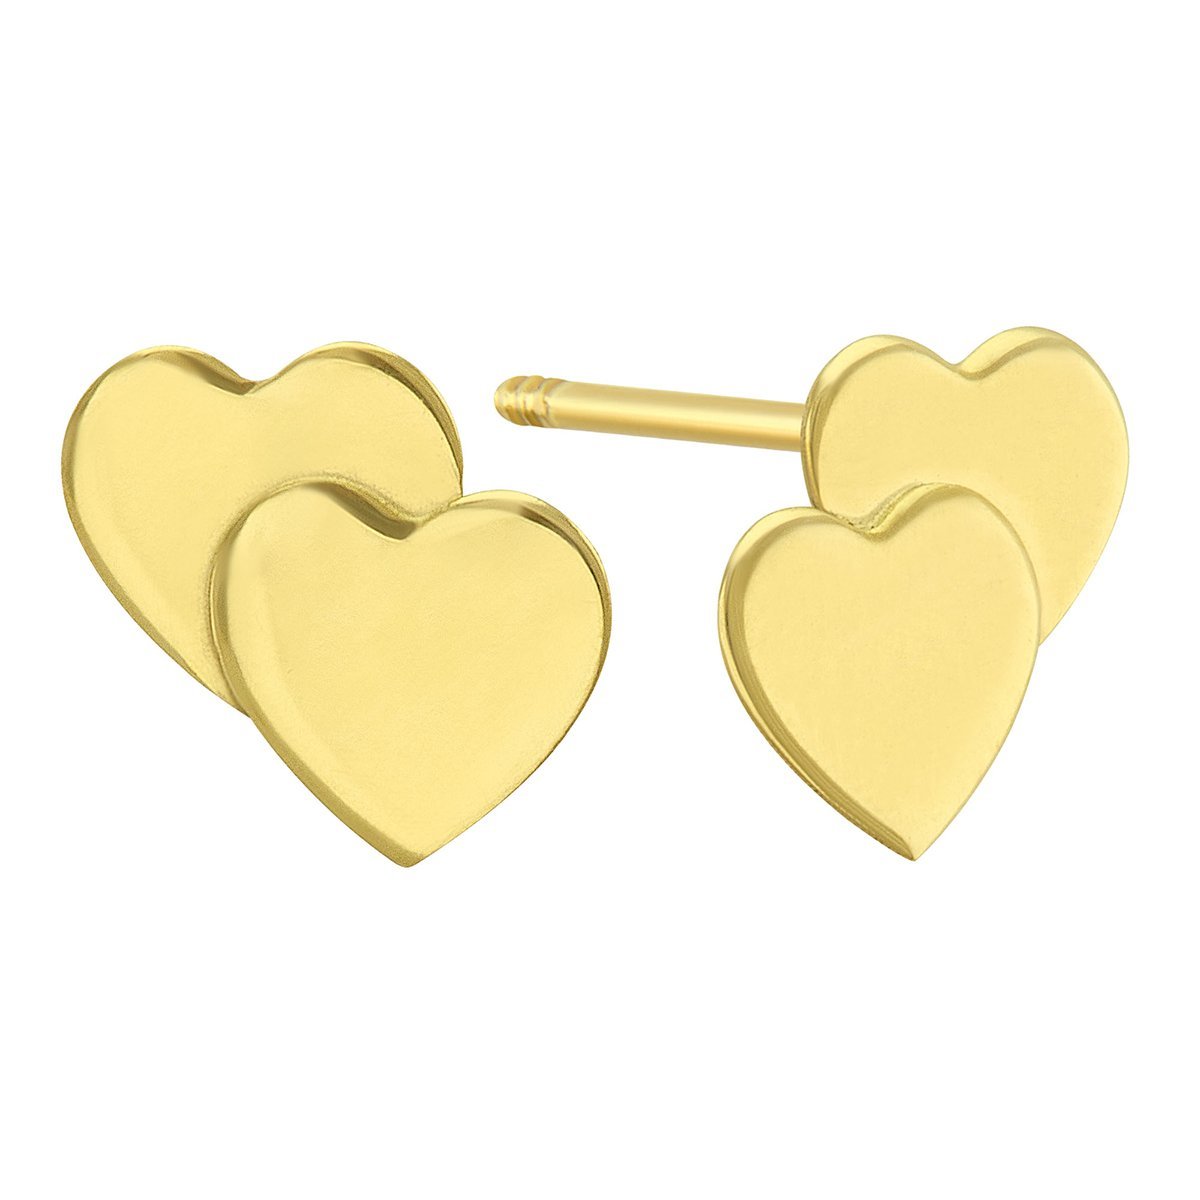 Broqueles de Oro Amarillo 14K Doble Corazón Sabelli